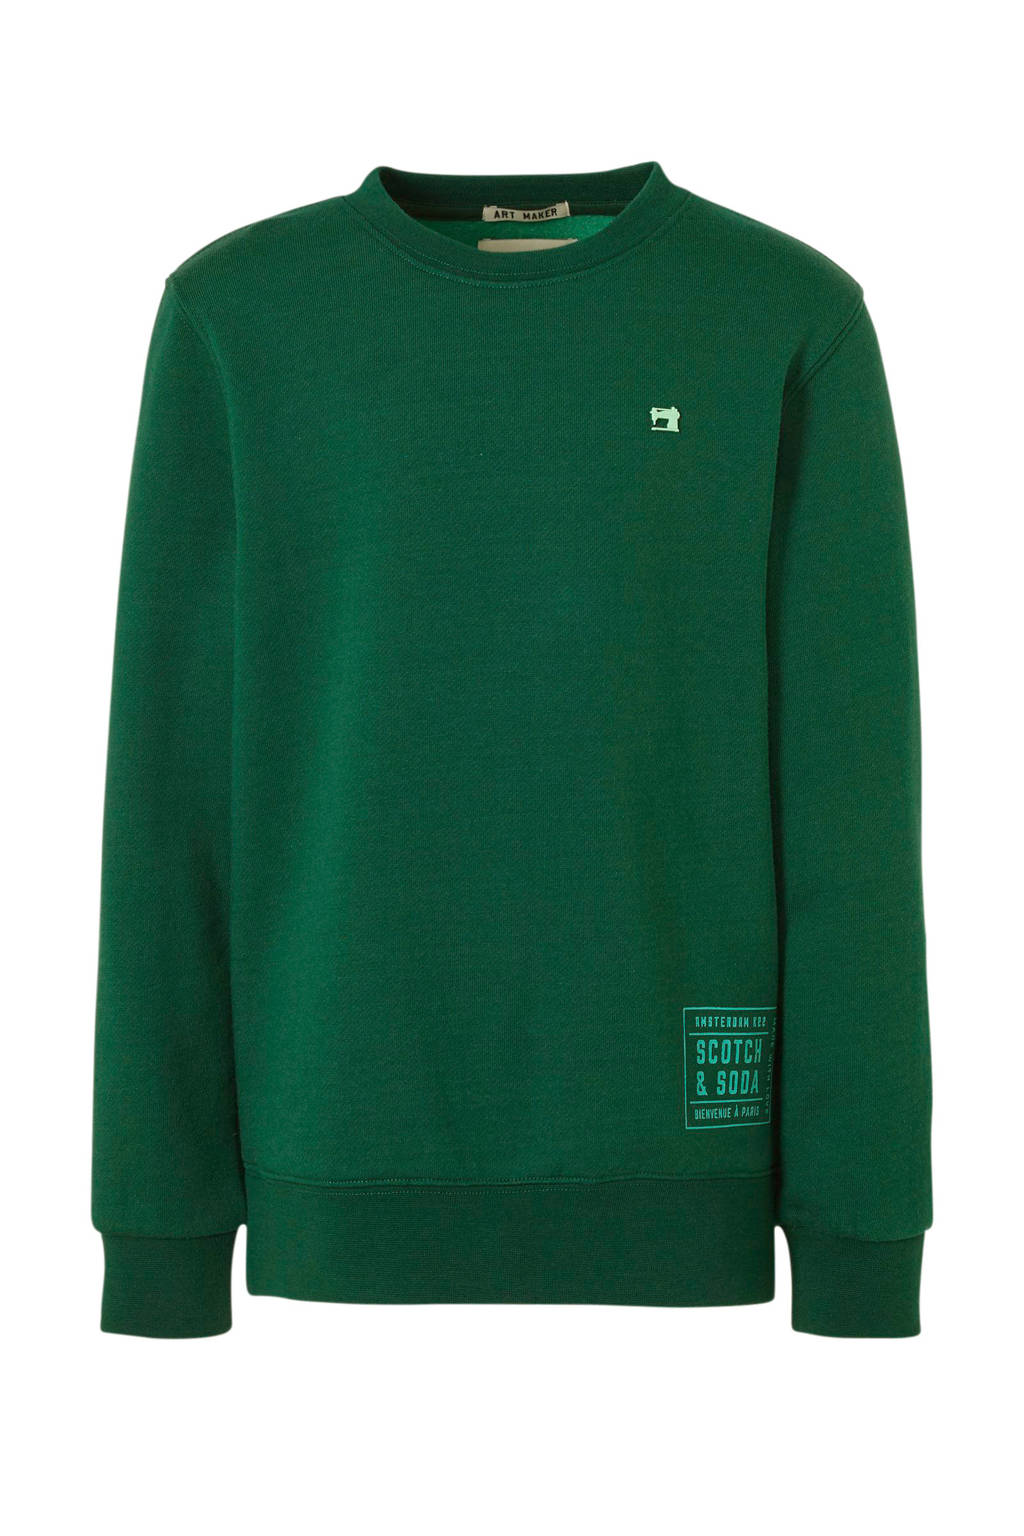 Scotch & sweater met logo groen | wehkamp